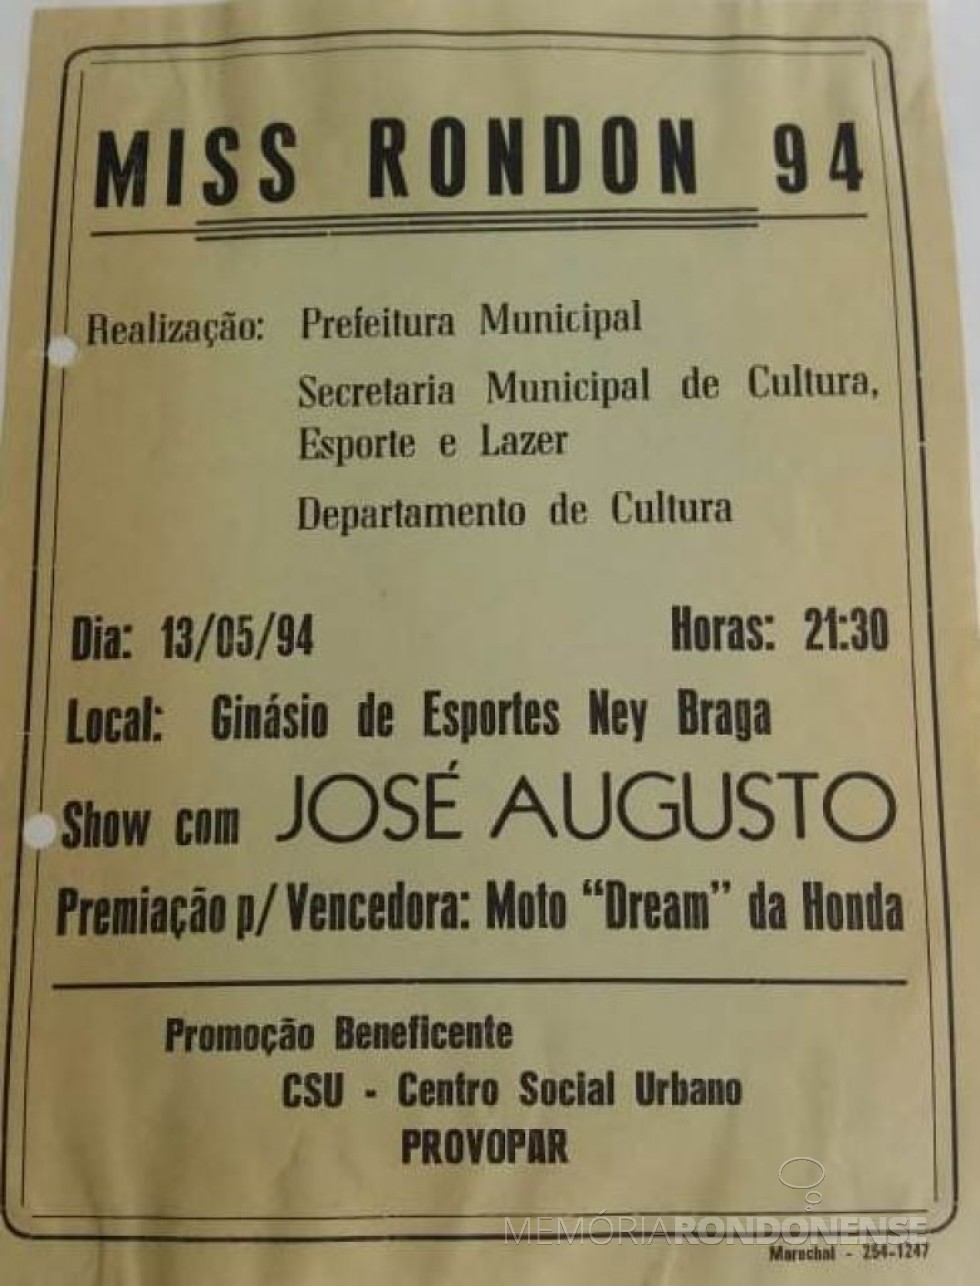 Capa do álbum do Miss Marechal Cândido Rondon 1994.
Imagem: Acervo Secretaria Municipal de Cultura - FOTO 15 -